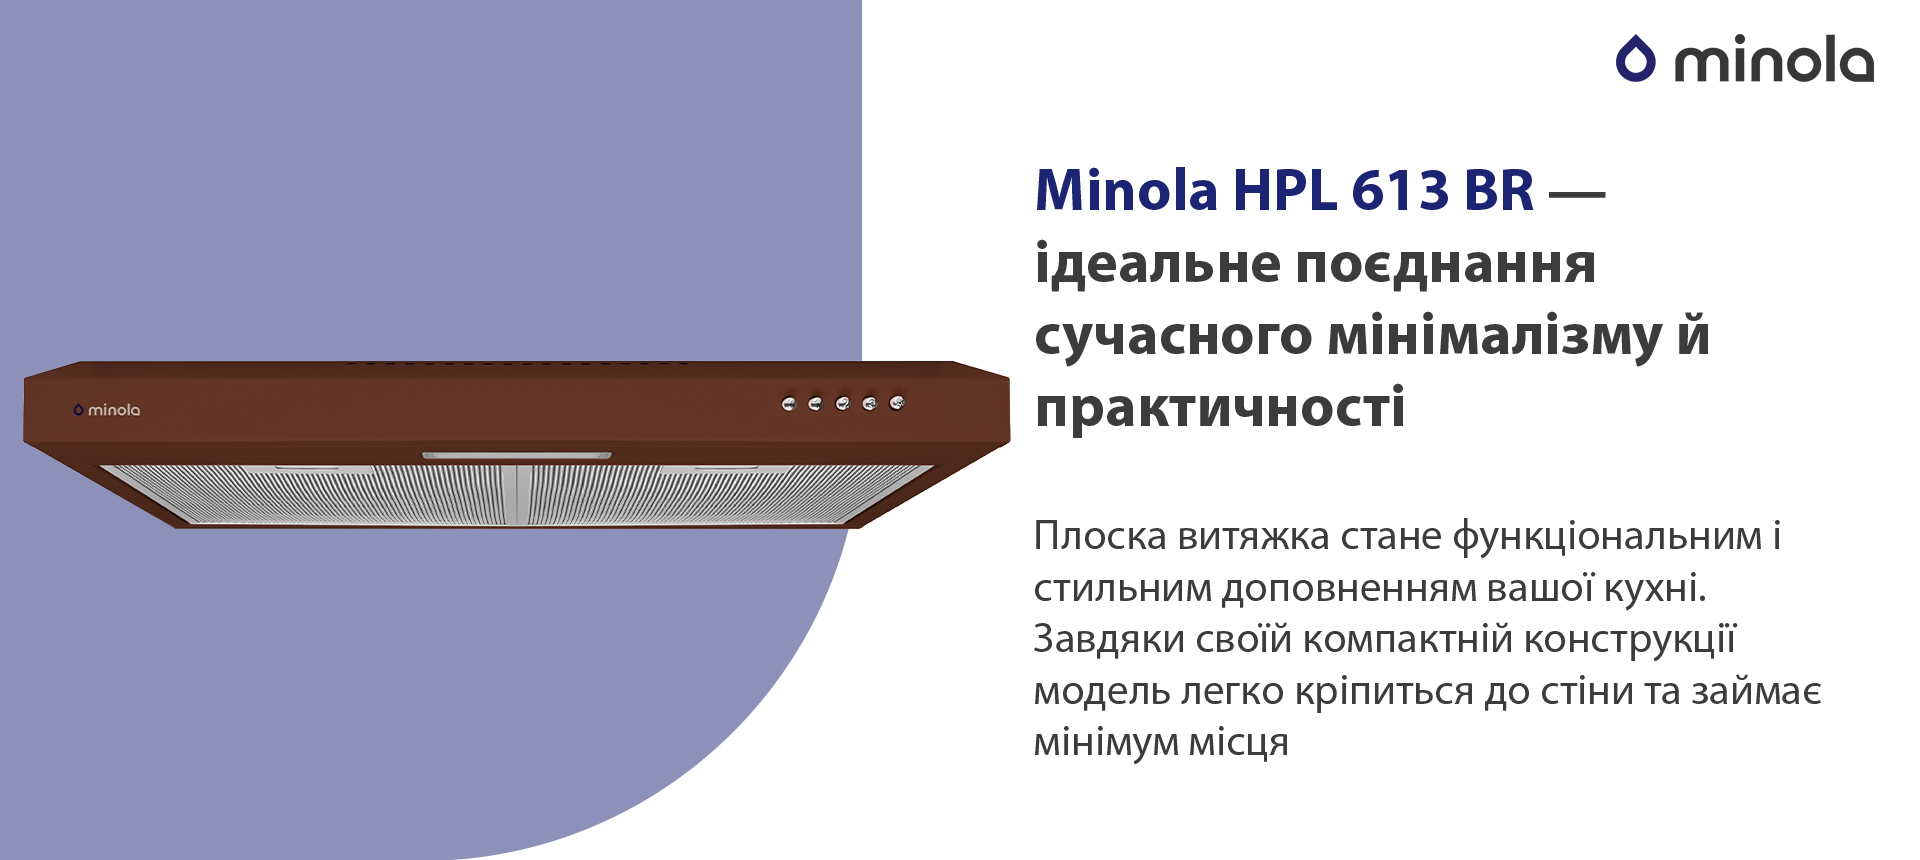 Витяжка кухонная плоская Minola HPL 613 BR обзор - фото 11